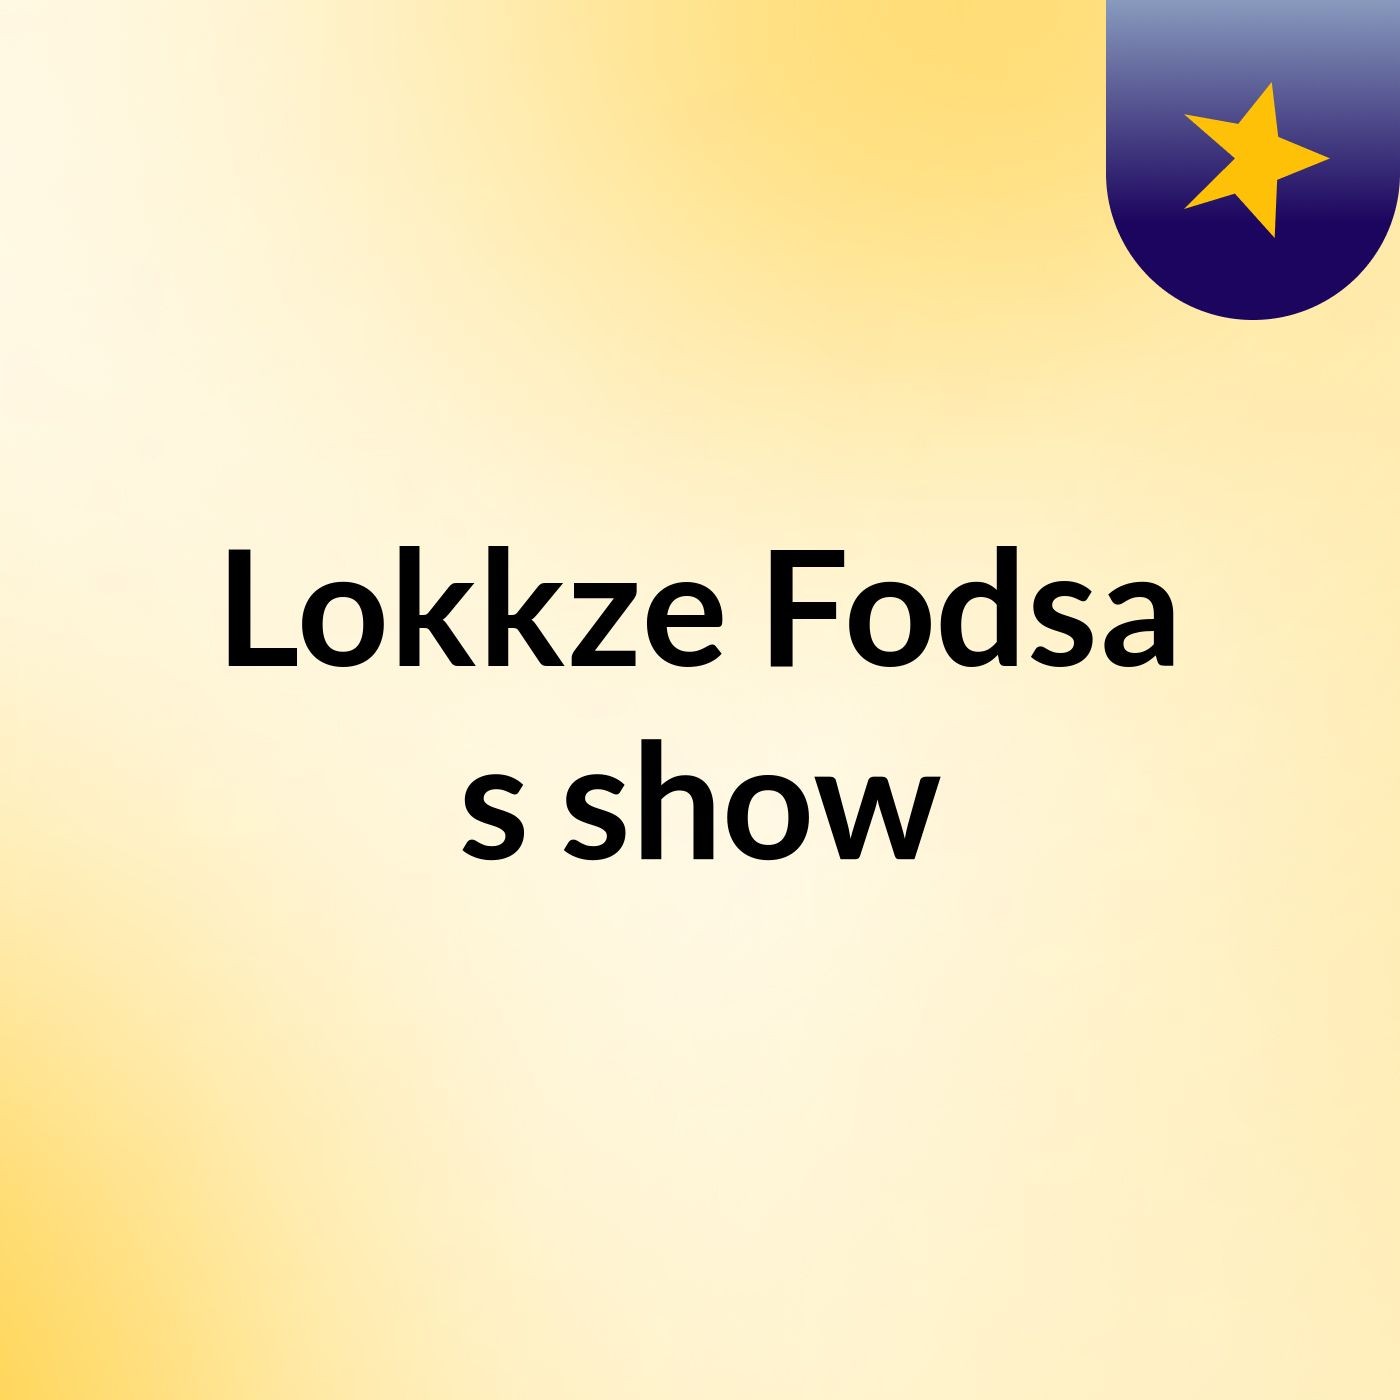 Lokkze Fodsa's show